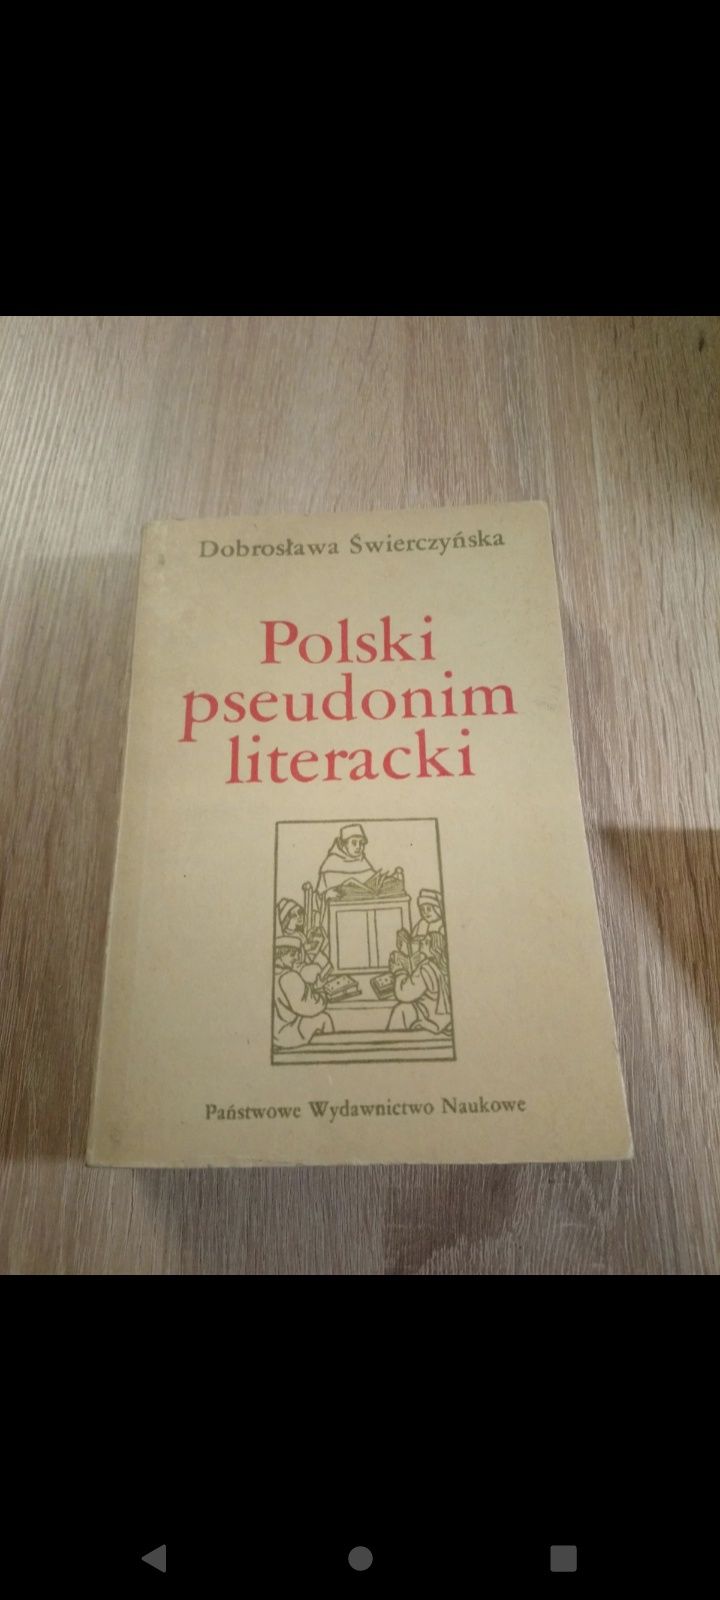 Dobrosława Świerczyńska - Polski pseudonim literacki

Państwowe Wyda